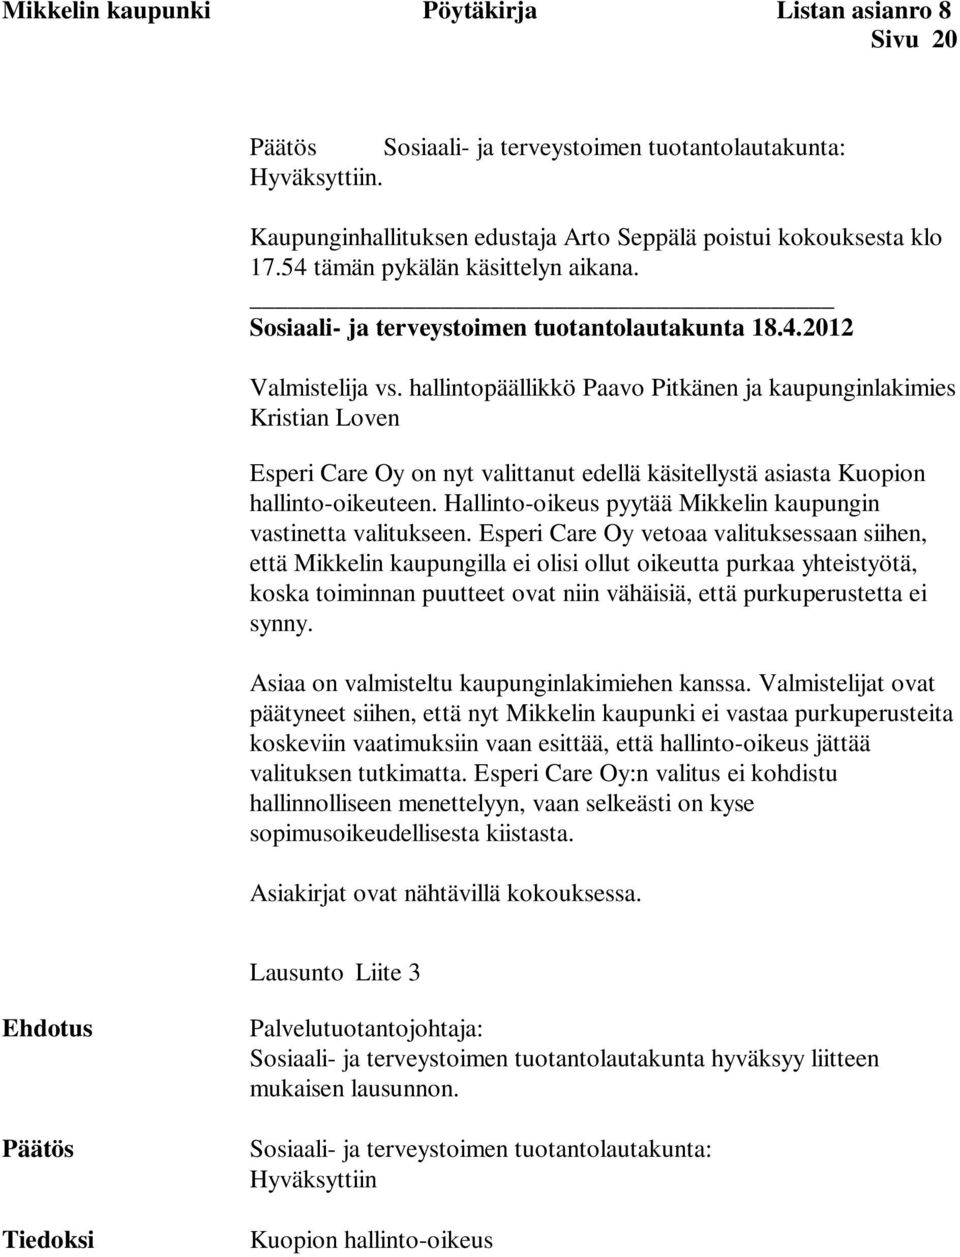 Hallinto-oikeus pyytää Mikkelin kaupungin vastinetta valitukseen.